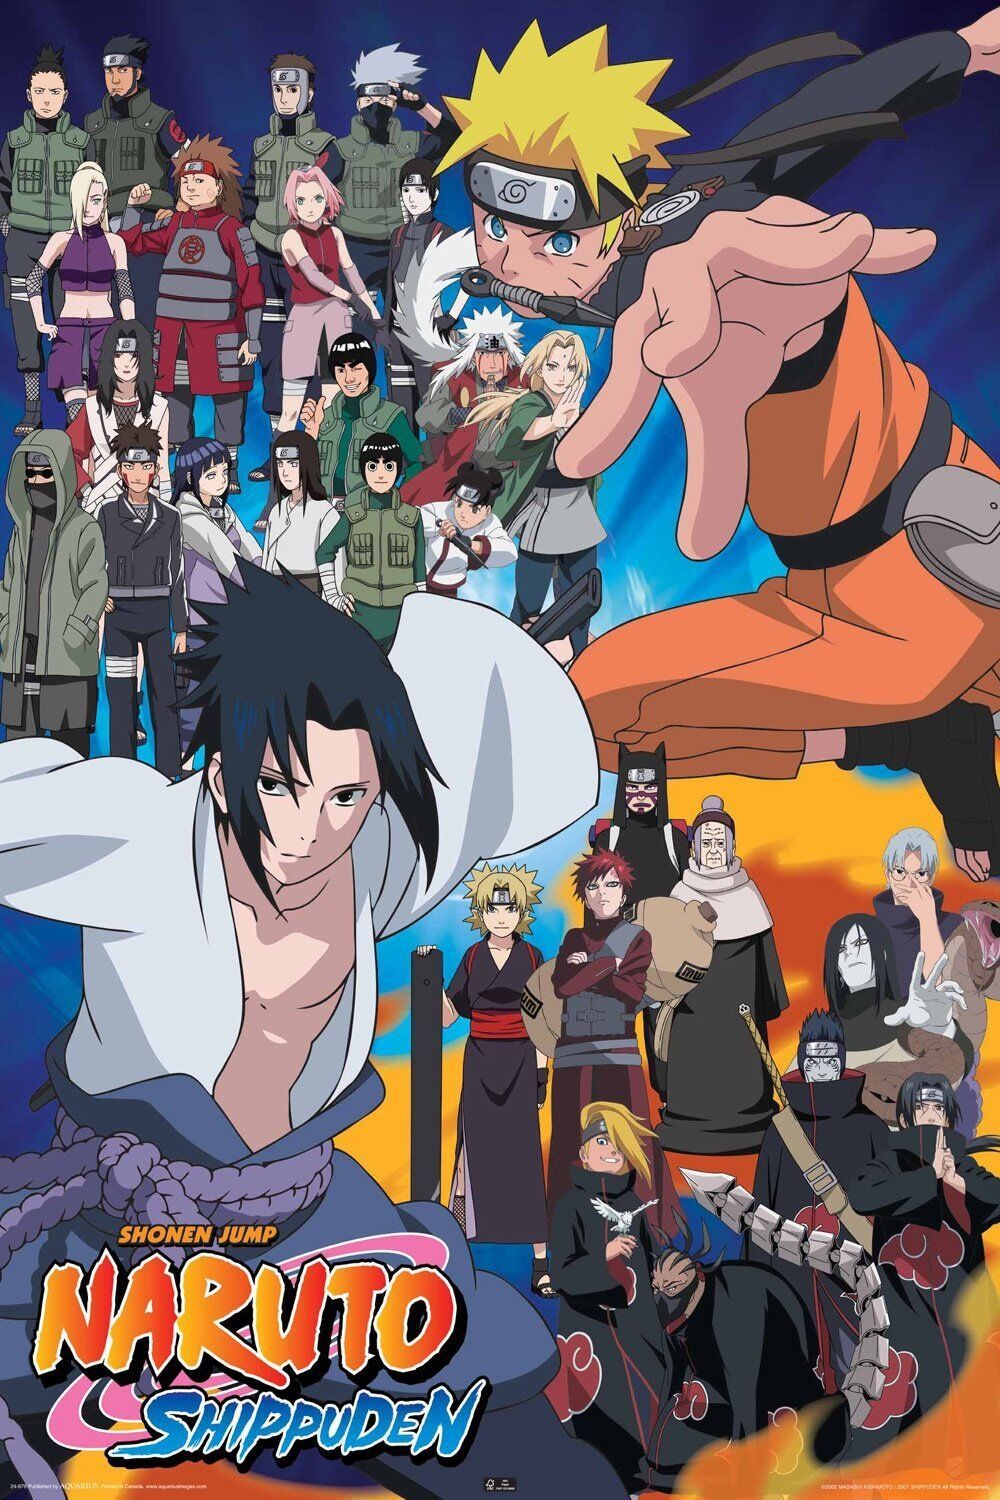 Naruto Shippuden (Series): Homecoming S01 E01